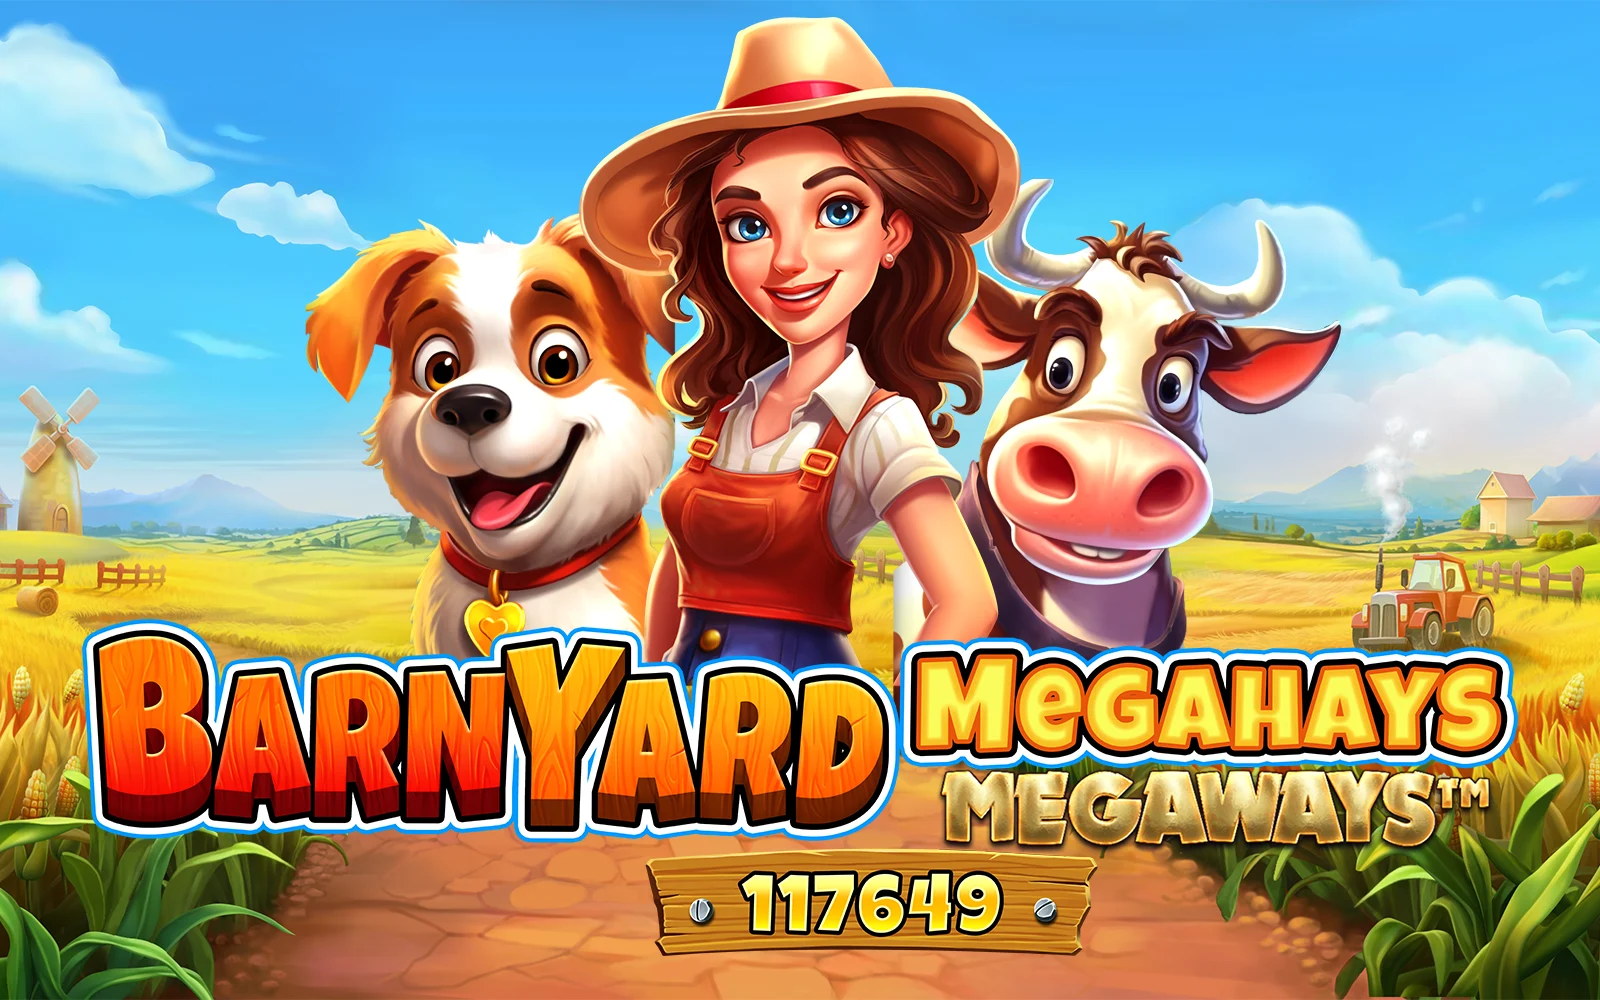 Παίξτε Barnyard Megahays Megaways™ στο online καζίνο Starcasino.be